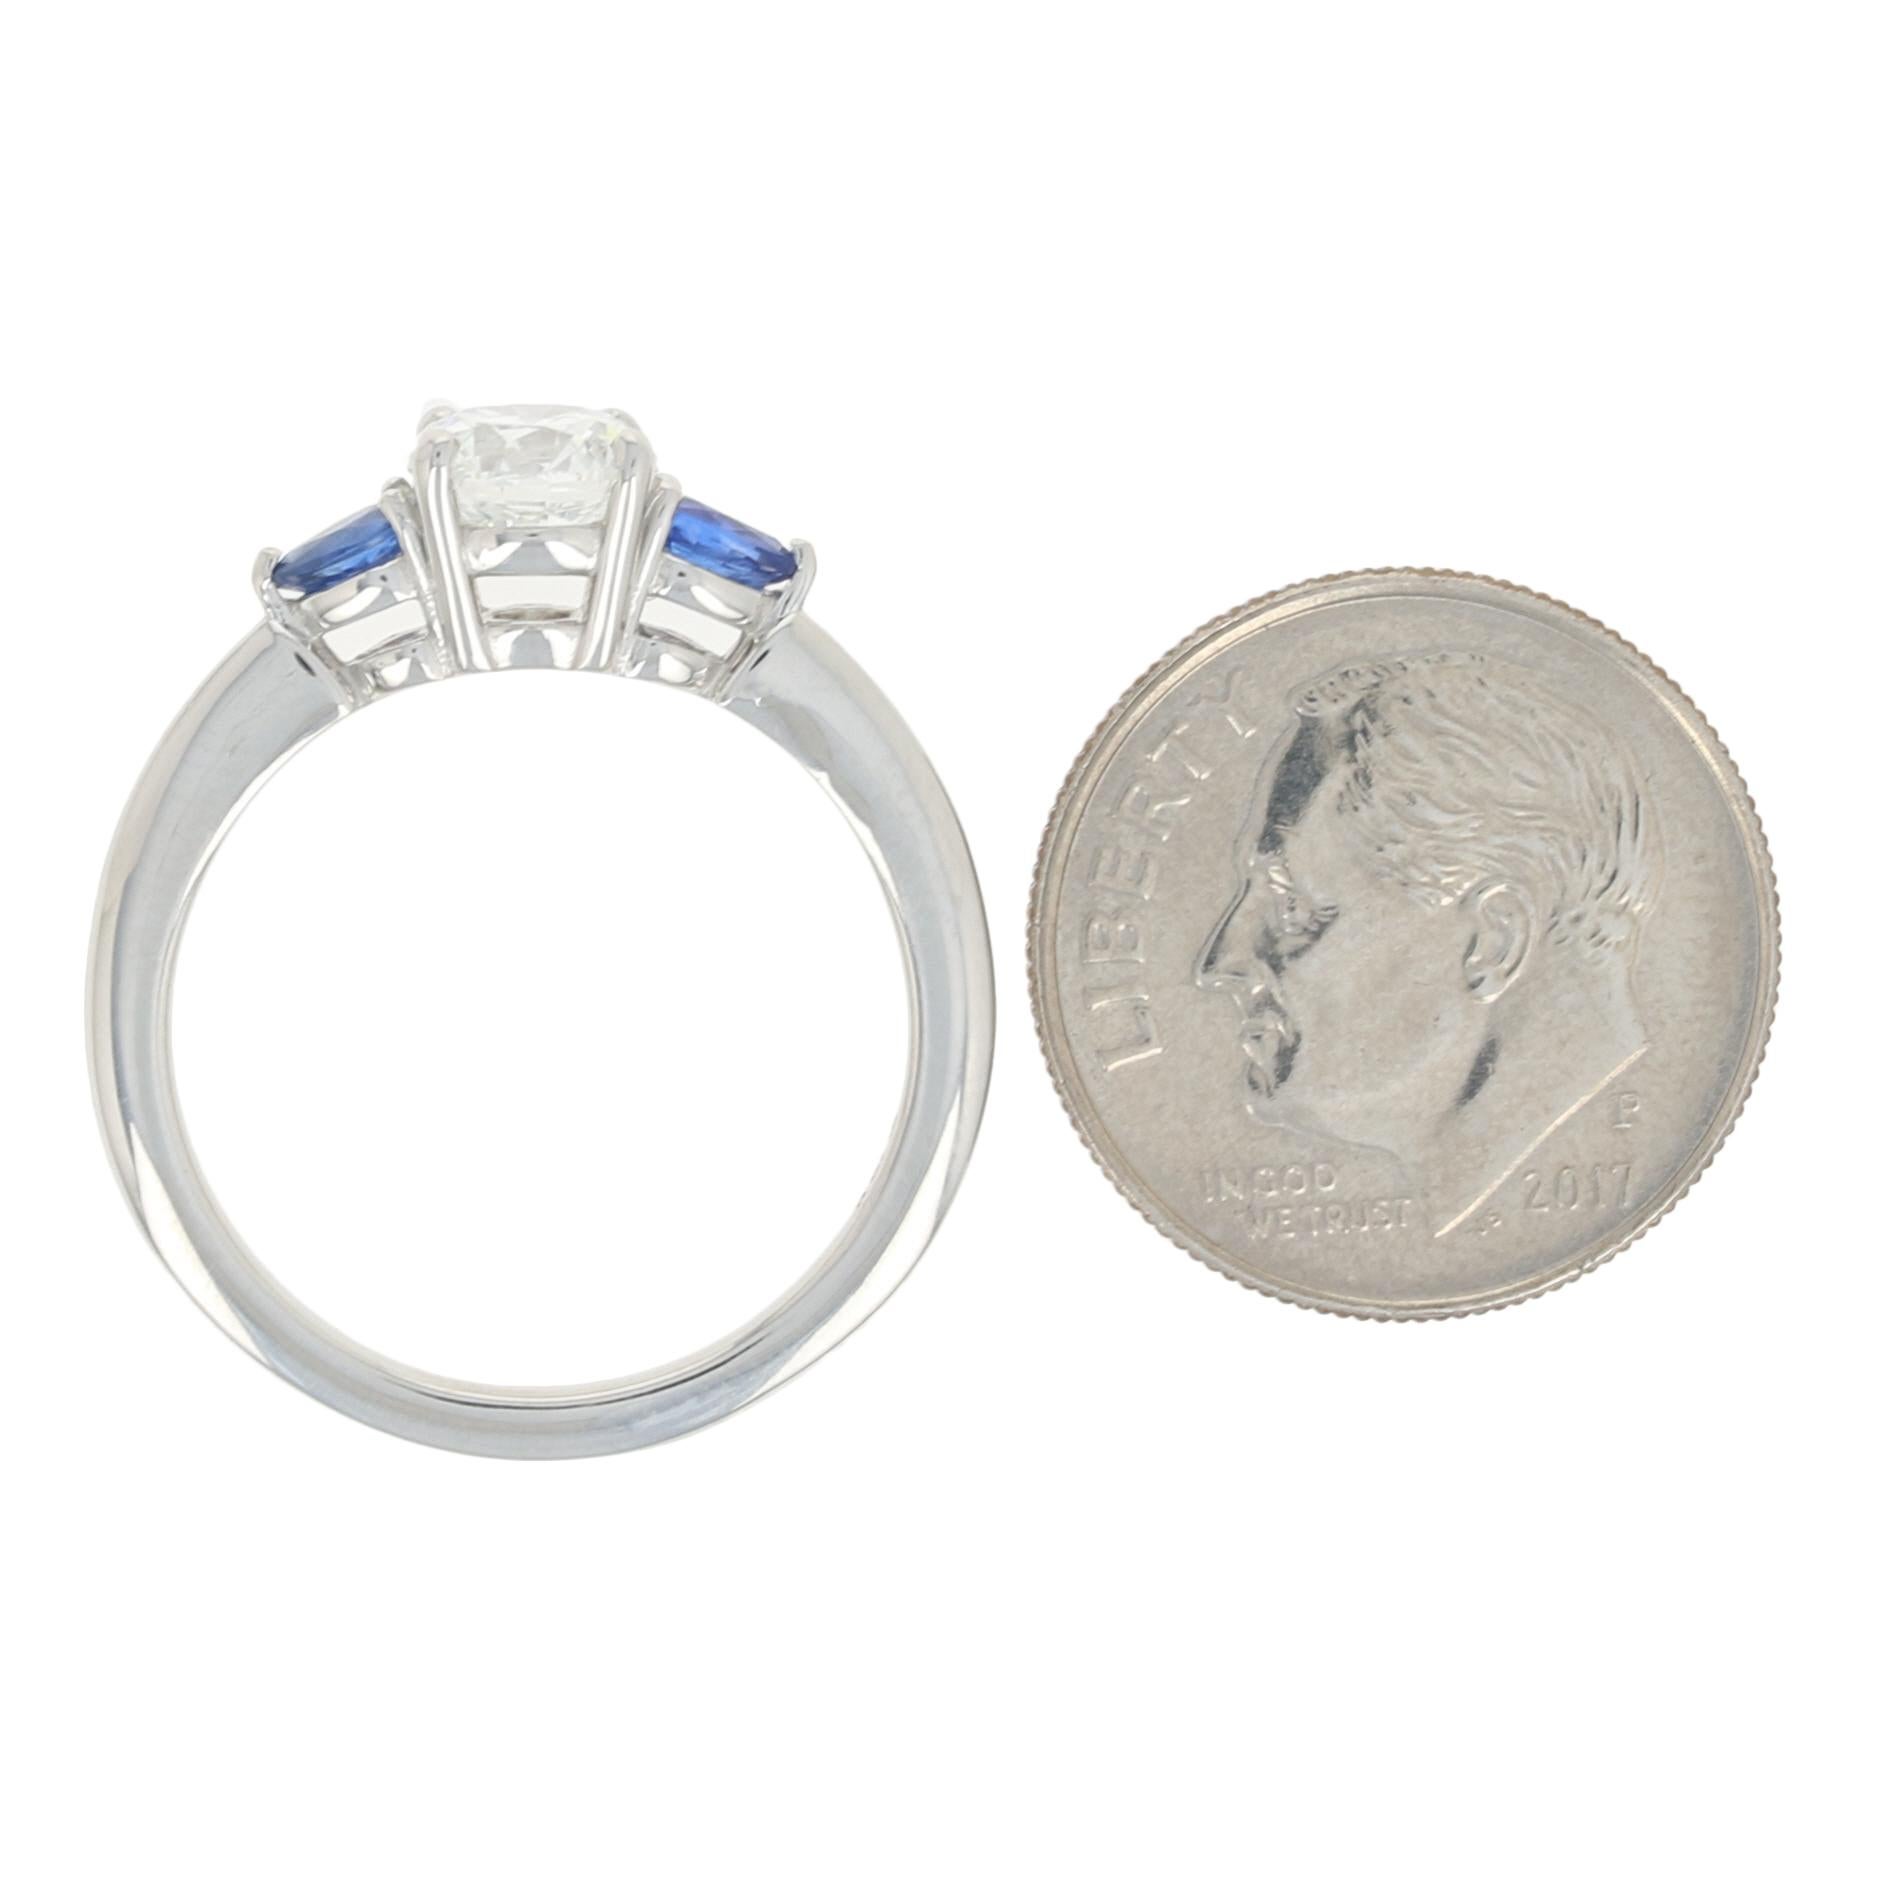 Round Cut 1.31 Carat Round Brilliant Diamond and Sapphire Engagement Ring, Platinum GIA